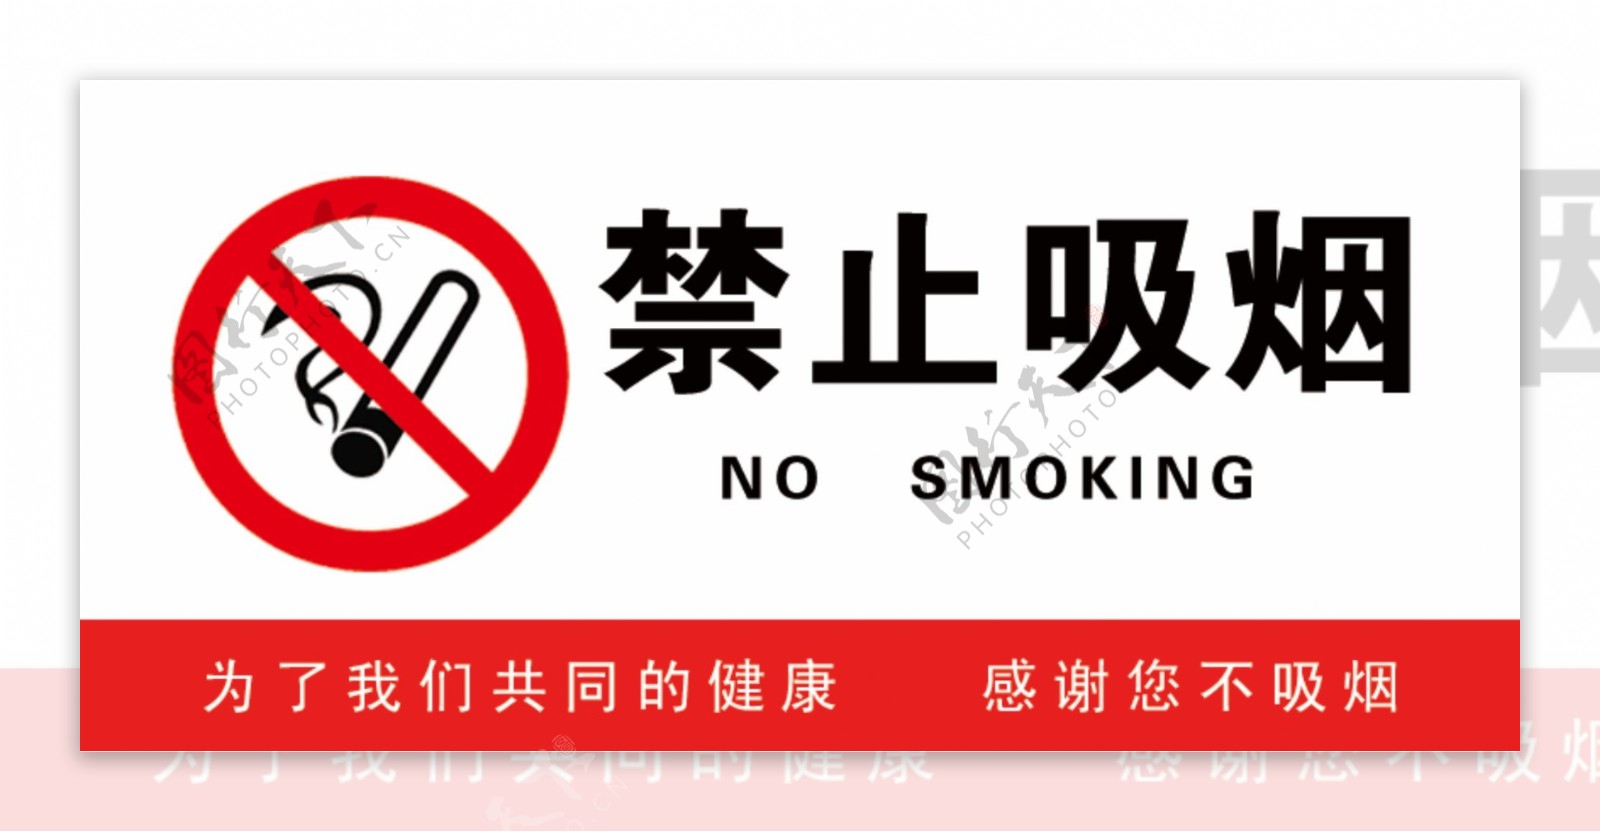 禁止吸烟门牌图片